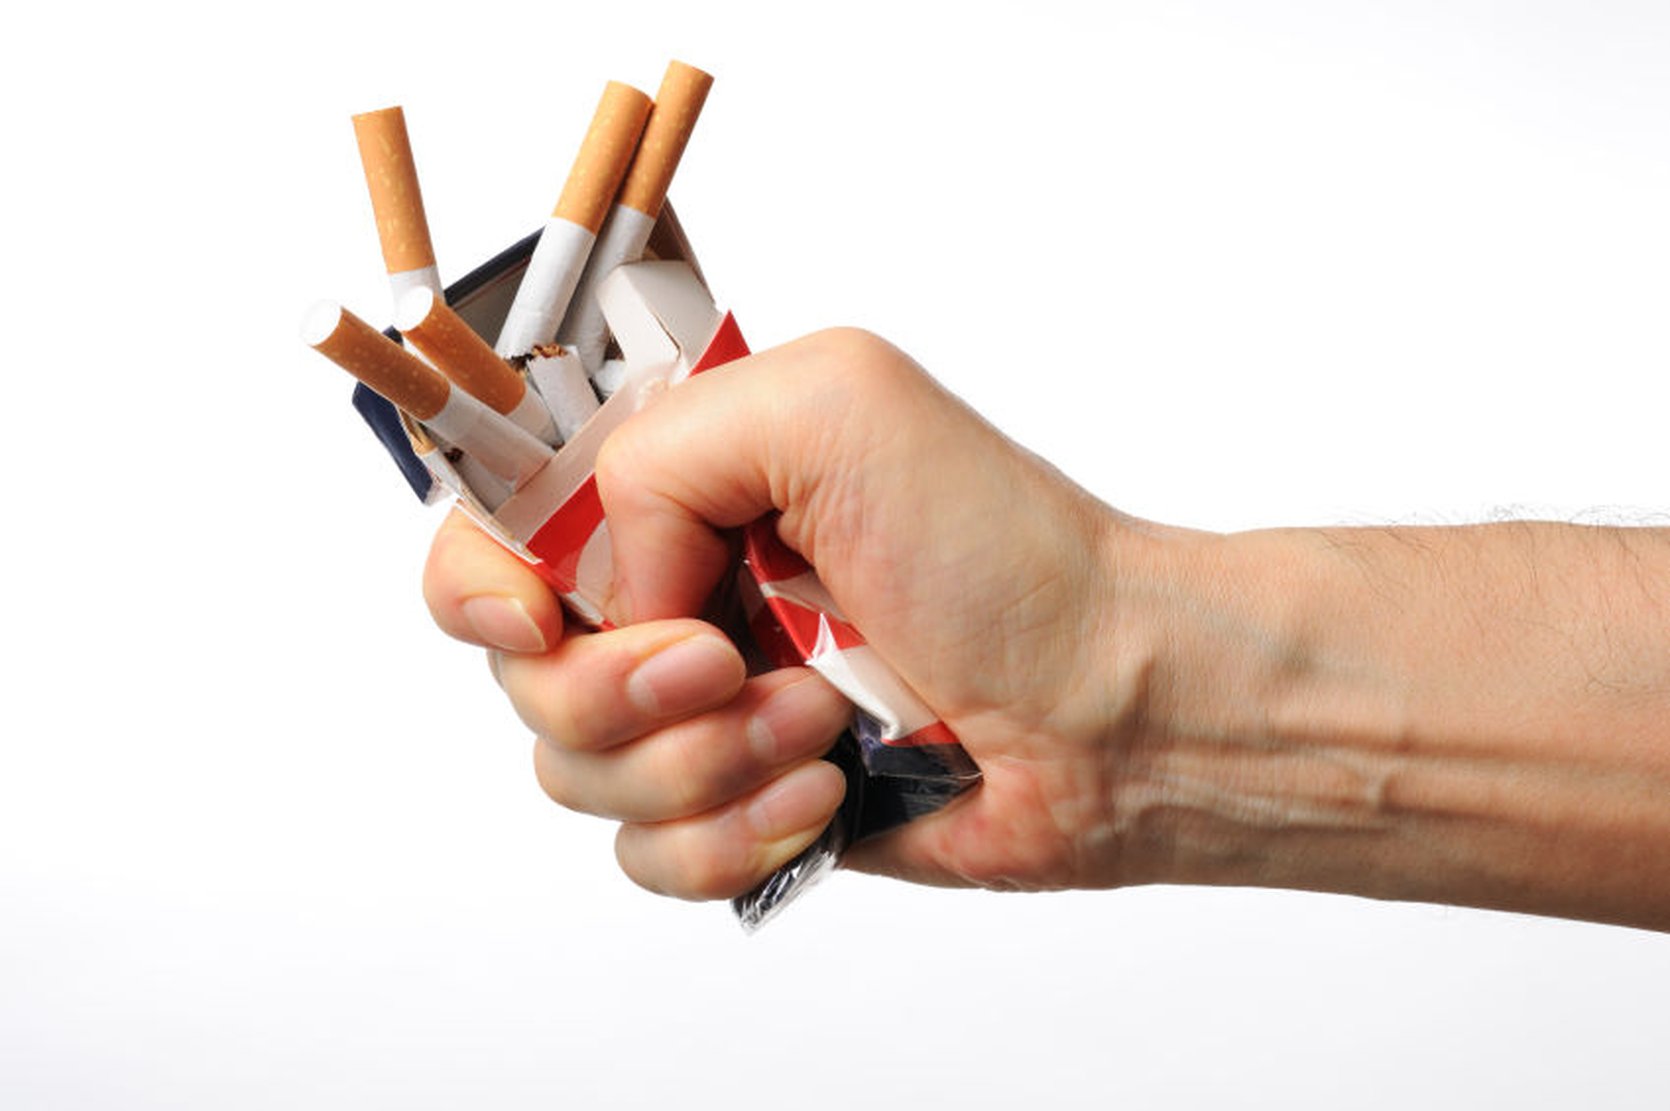 De laatste ontwikkelingen in stoppen met roken samengevat